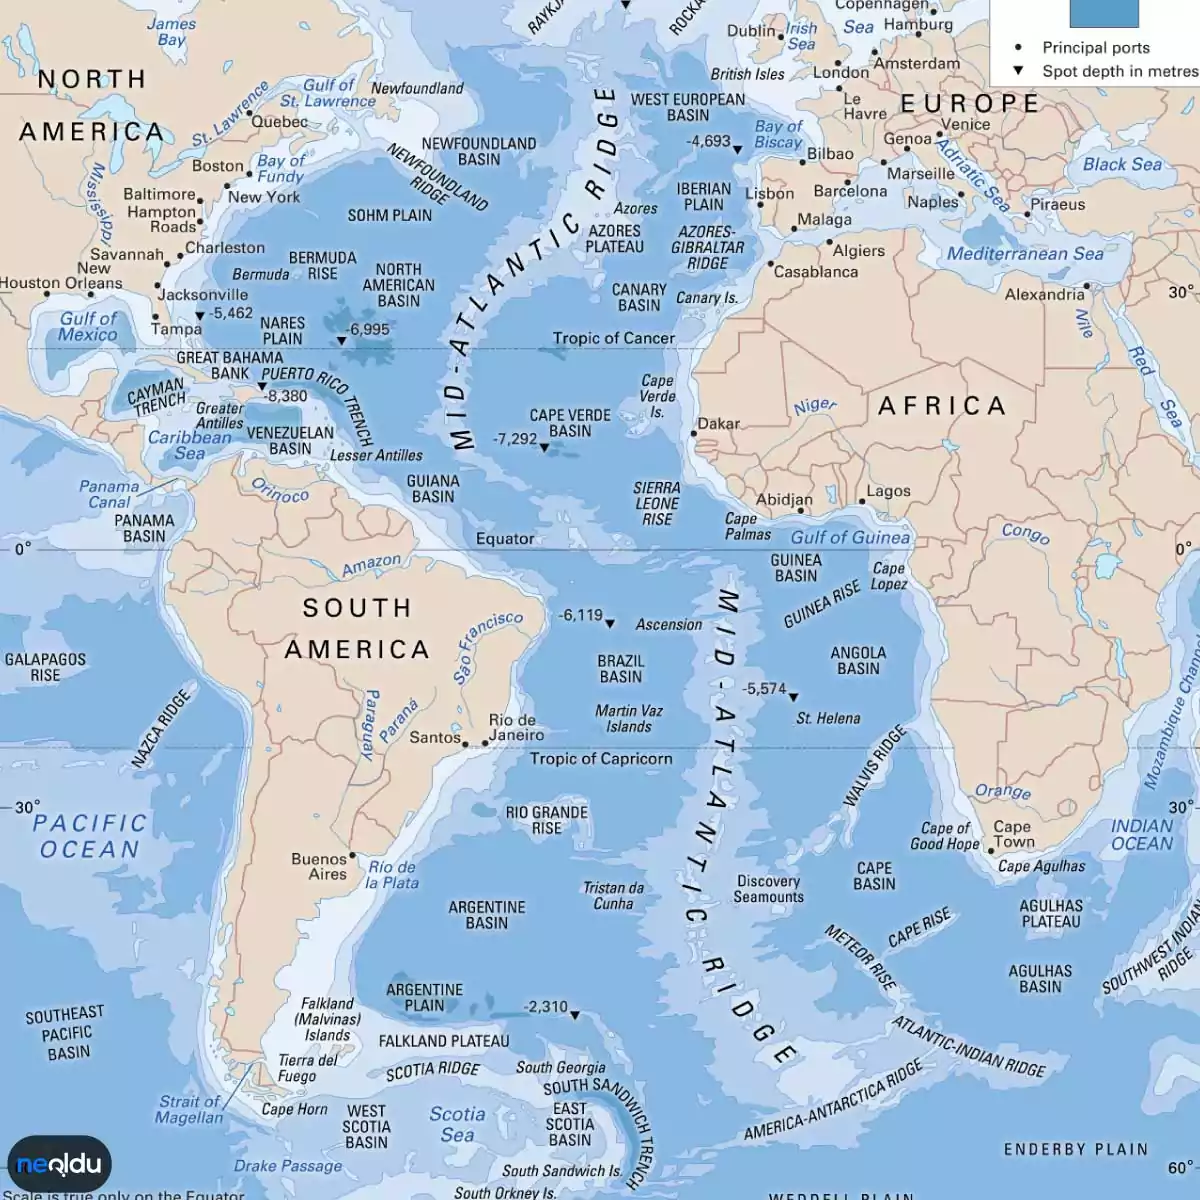 Atlas-Atlantik Okyanusu Hakkında Bilgi